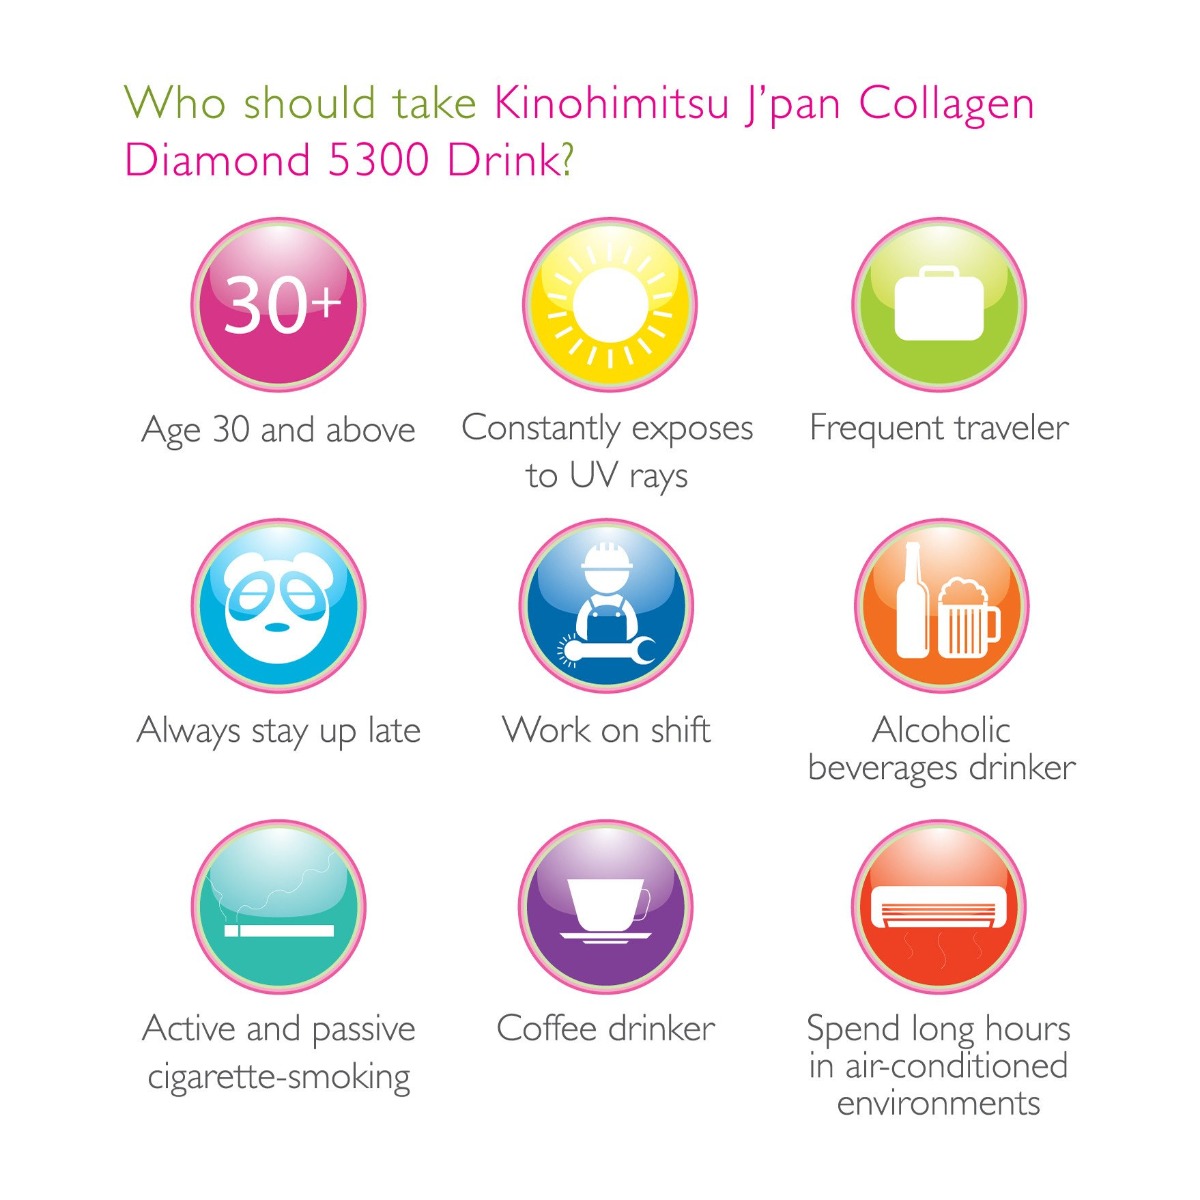 Nước Uống Kinohimitsu Diamond 5300 dành cho người cần bổ sung lượng collagen bị thiếu hụt